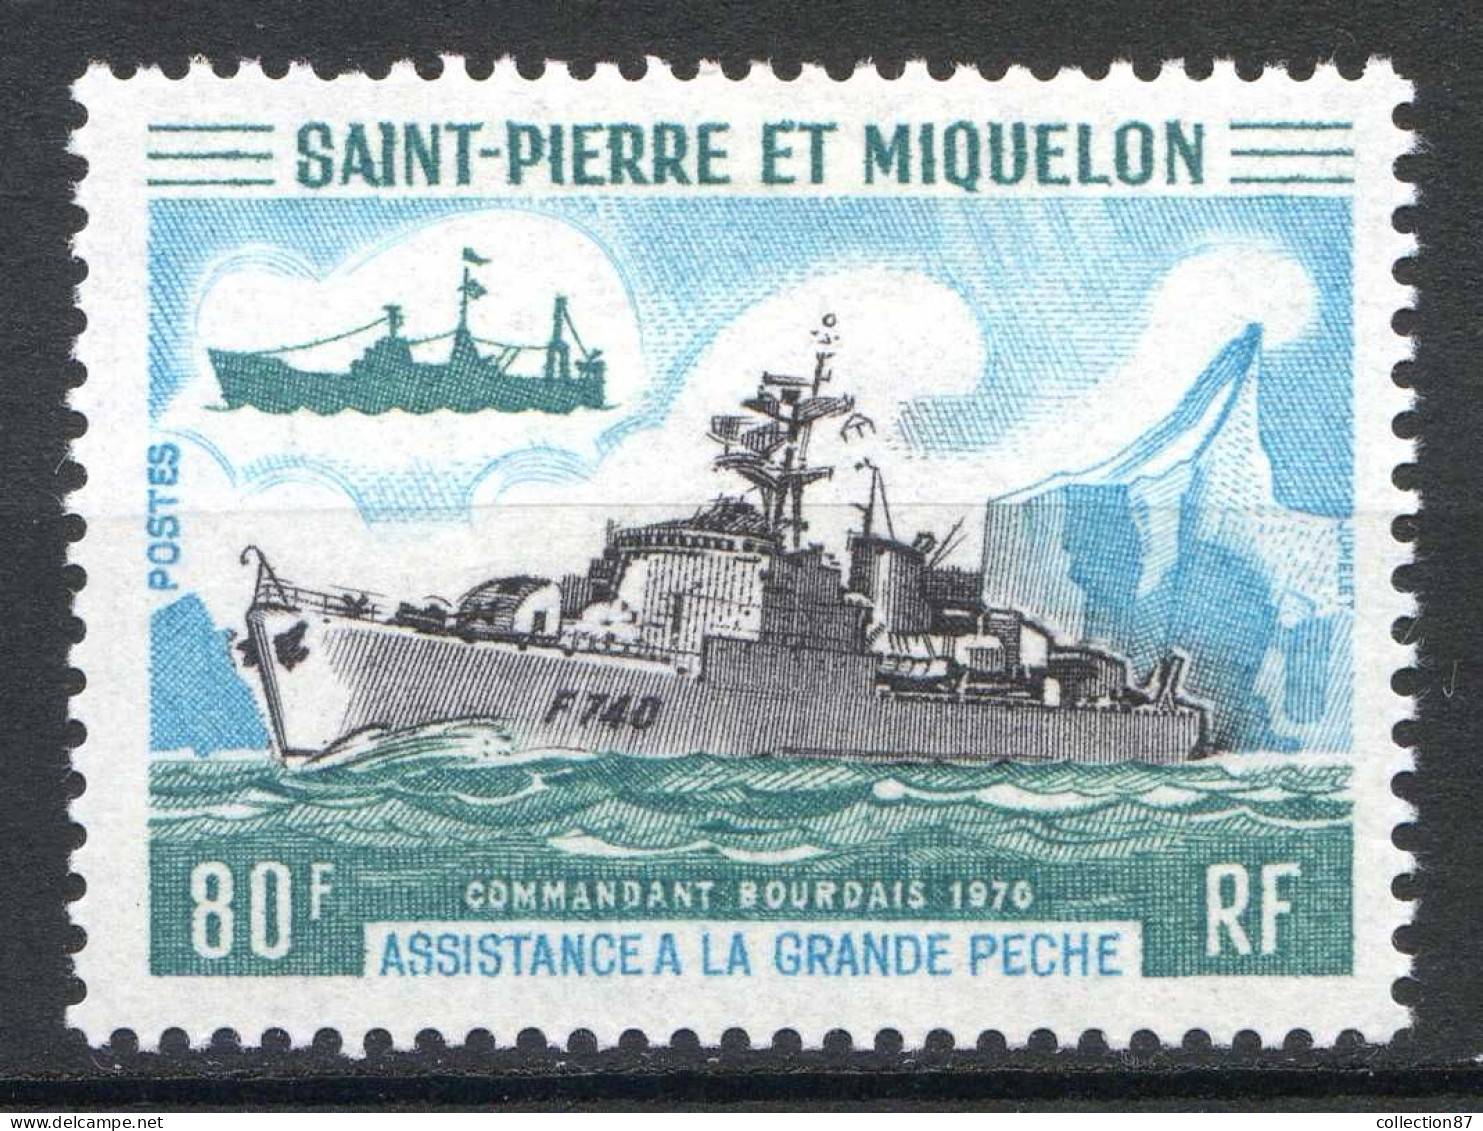 Réf 085 > SAINT PIERRE Et MIQUELON < N° 413 * < Neuf Ch -- MH * --- > Bateau De Peche Commandant Bourdais - Unused Stamps